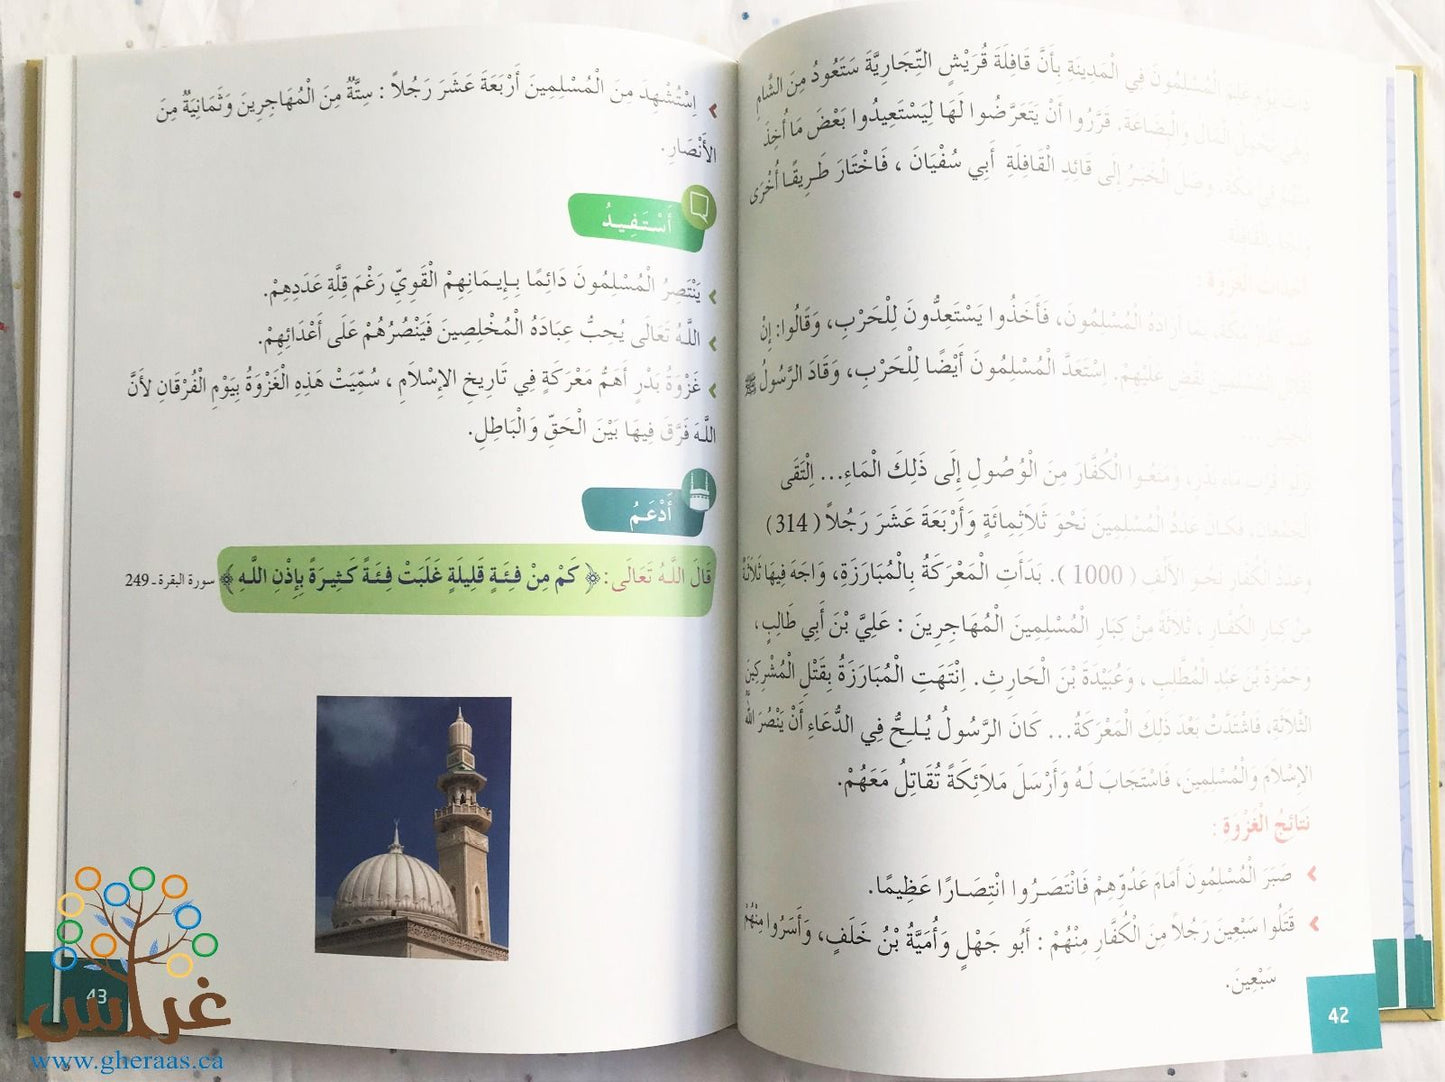 منهج التربية الإسلامية - المستوى 5  ||  Islamic Education curriculum - Level 5